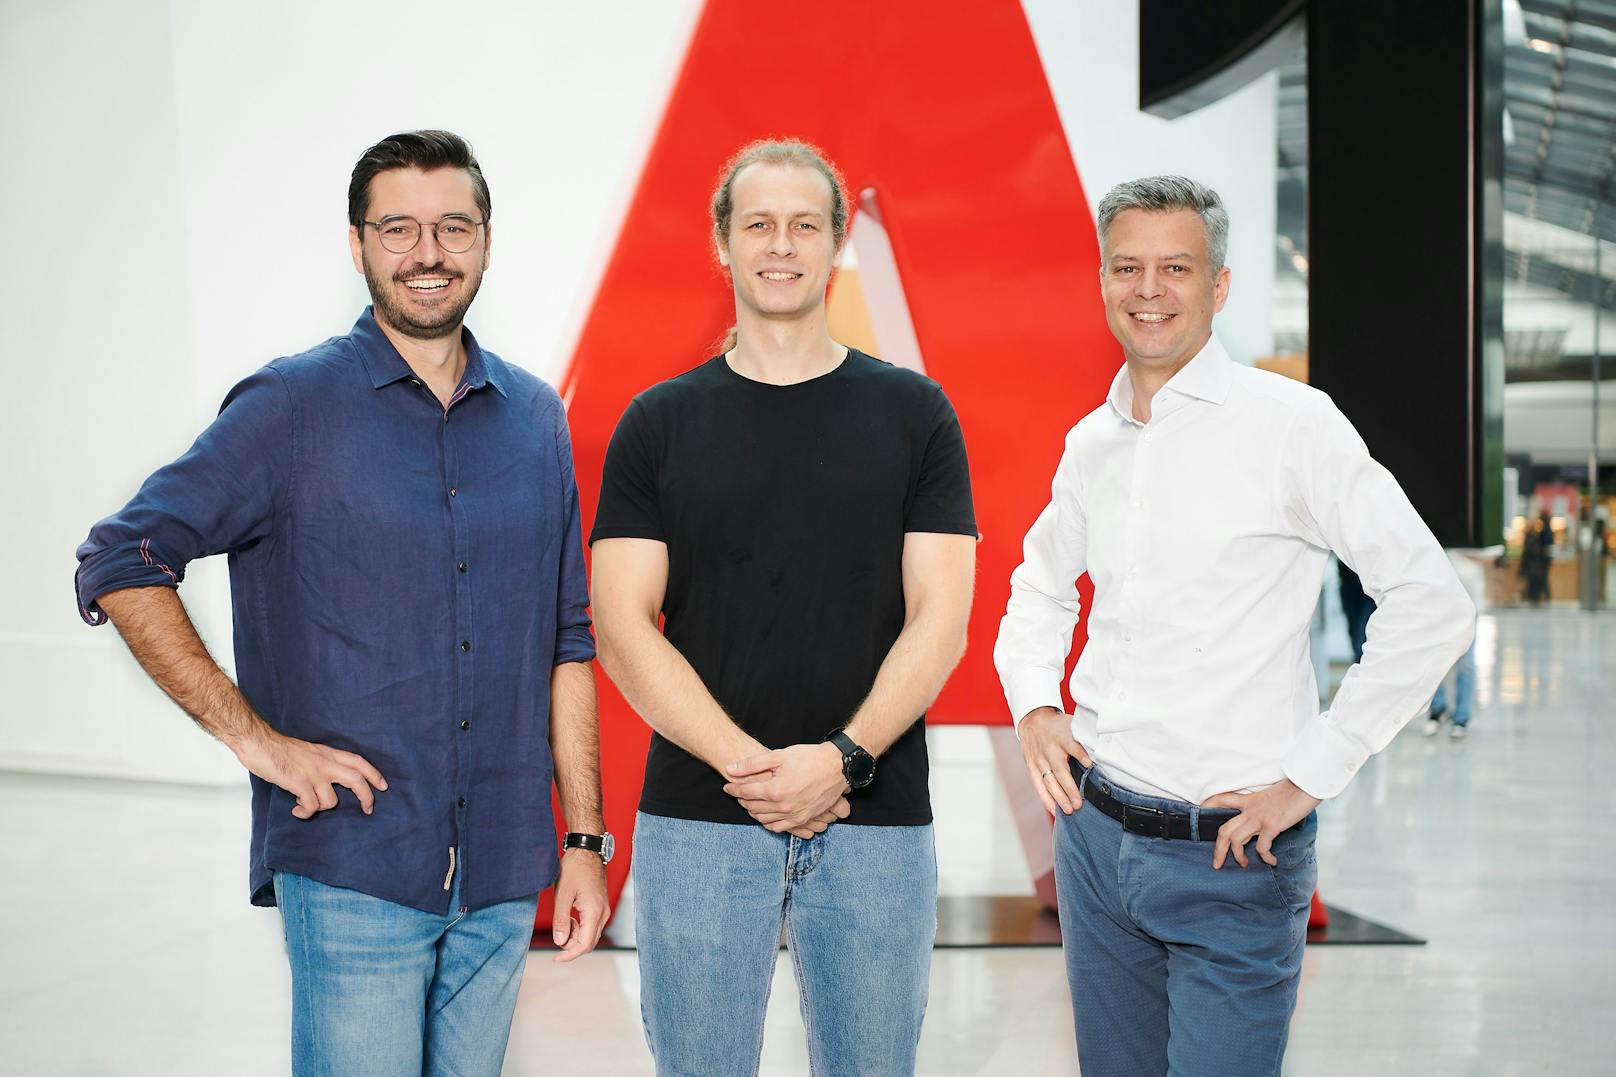 Emir Causevic, Gründer und CEO Sleeve, Irmin Okic, Co-Gründer und CTO Sleeve, Thomas Arnoldner, CEO A1 Telekom Austria Group.